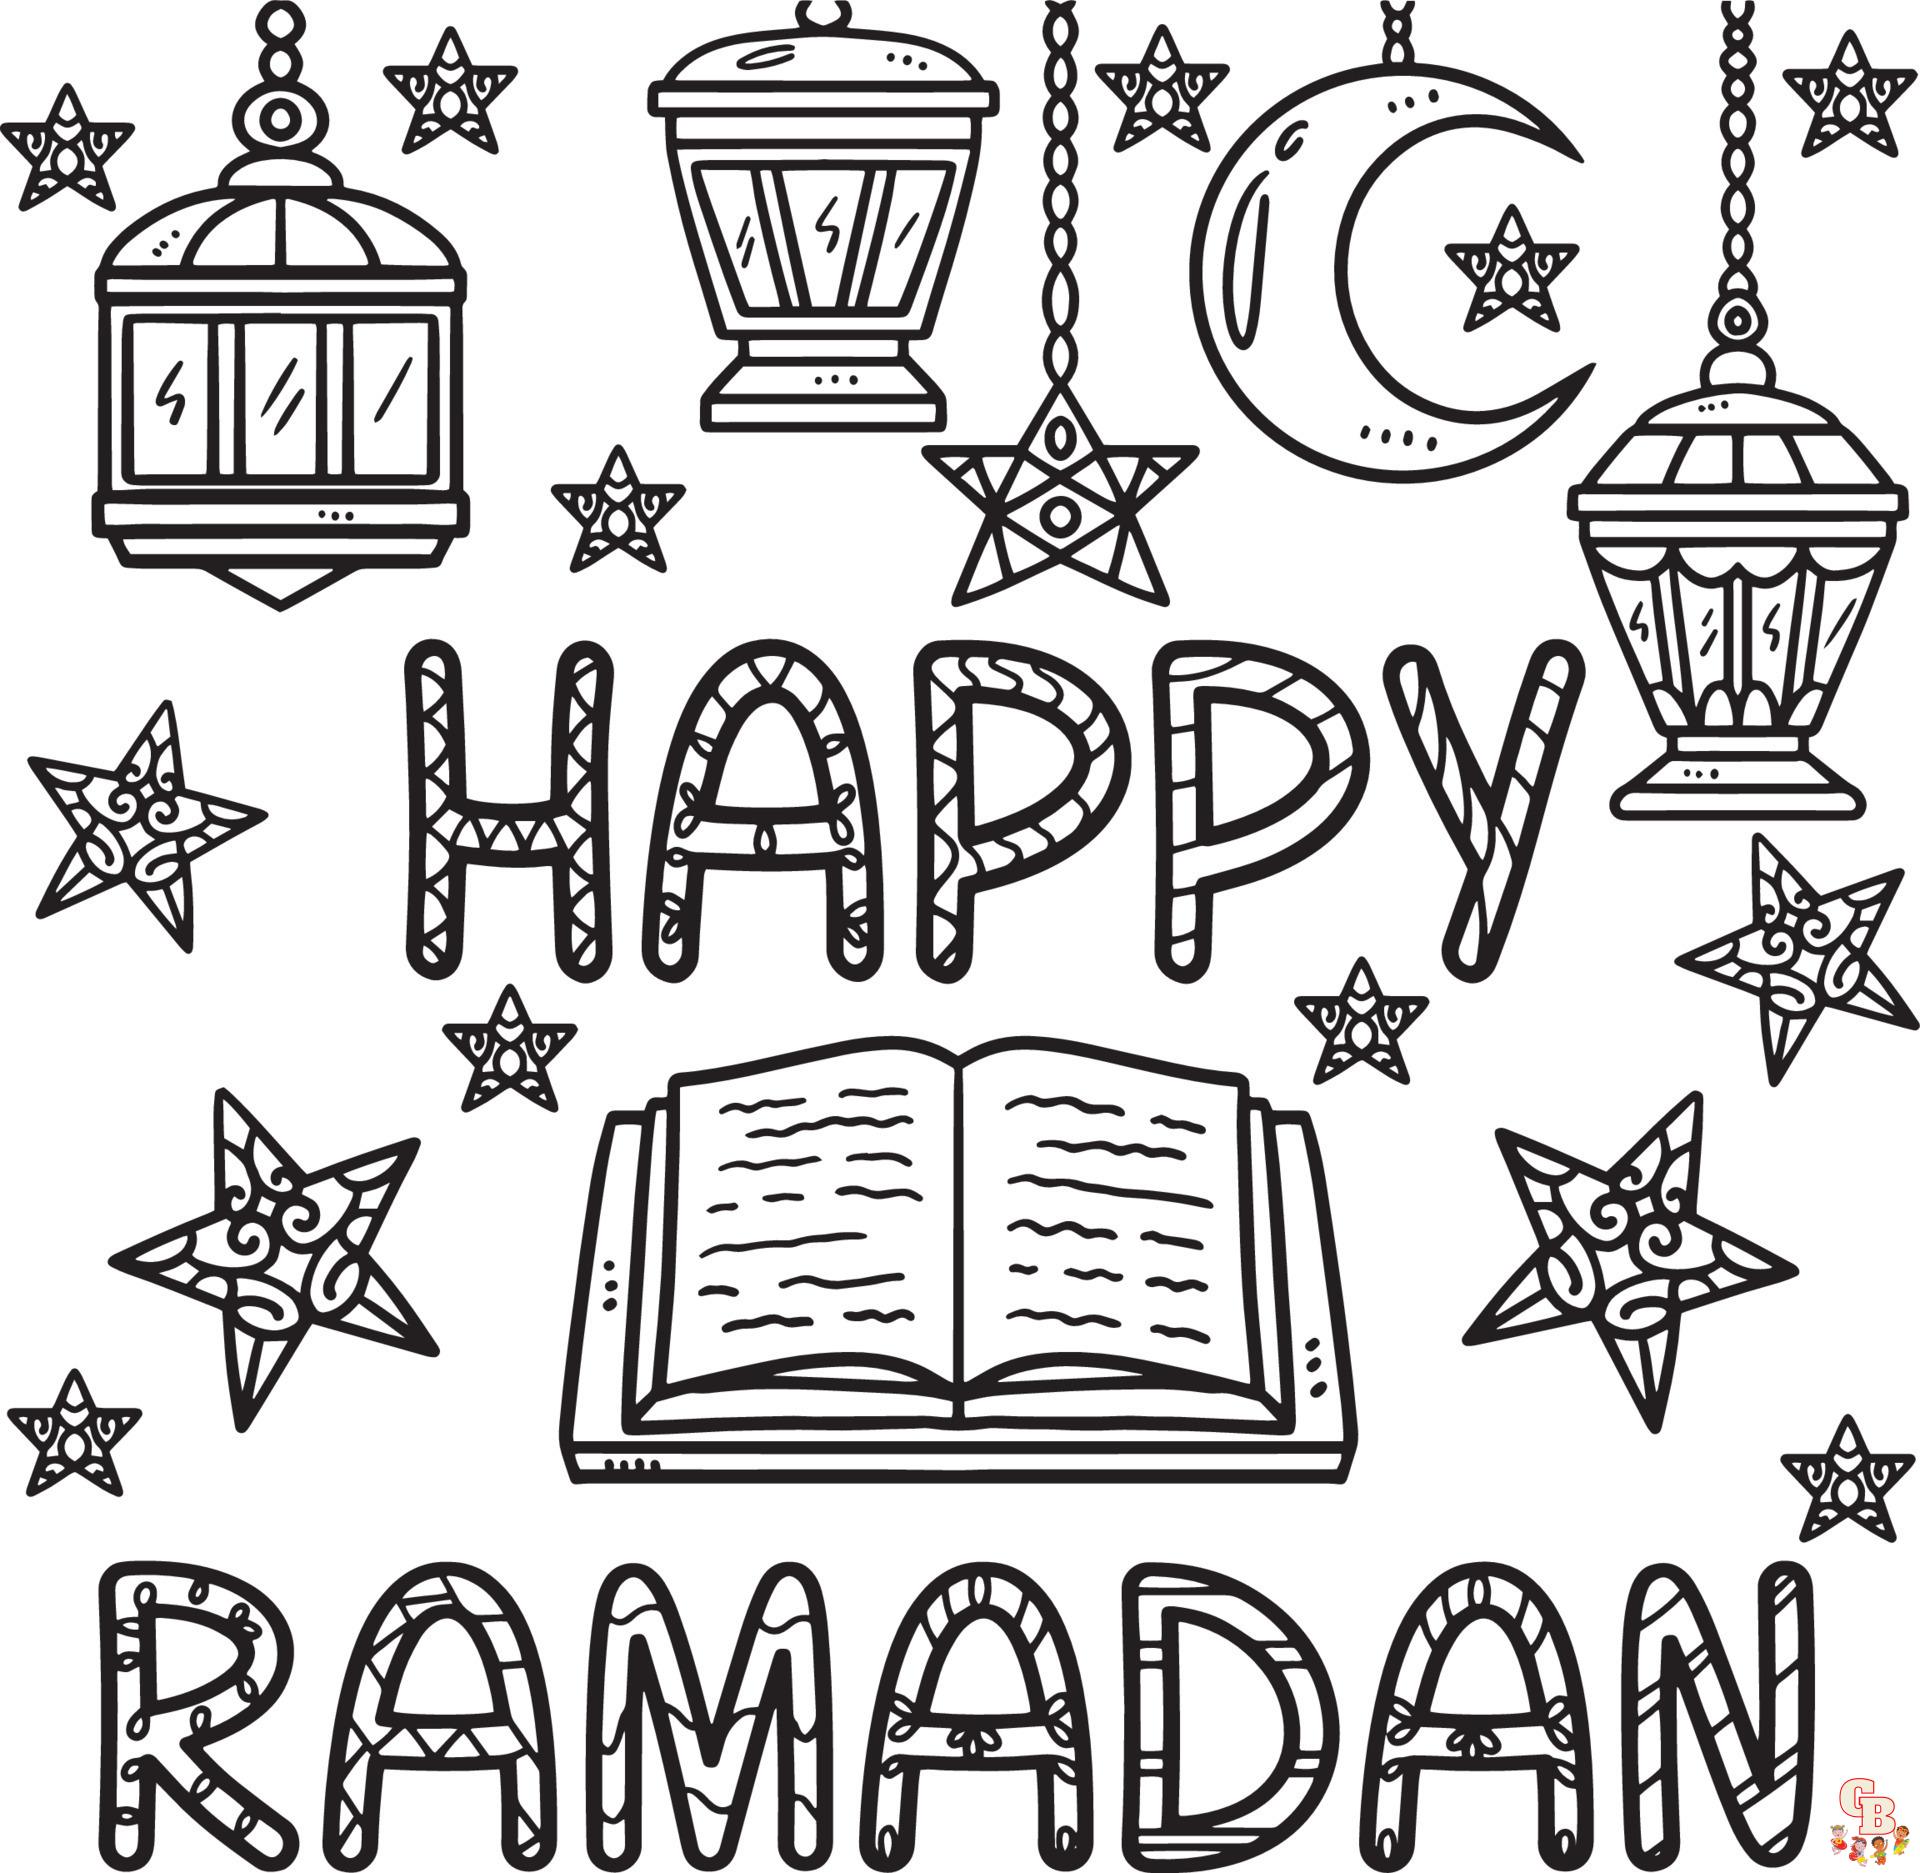 Ramadan da colorare